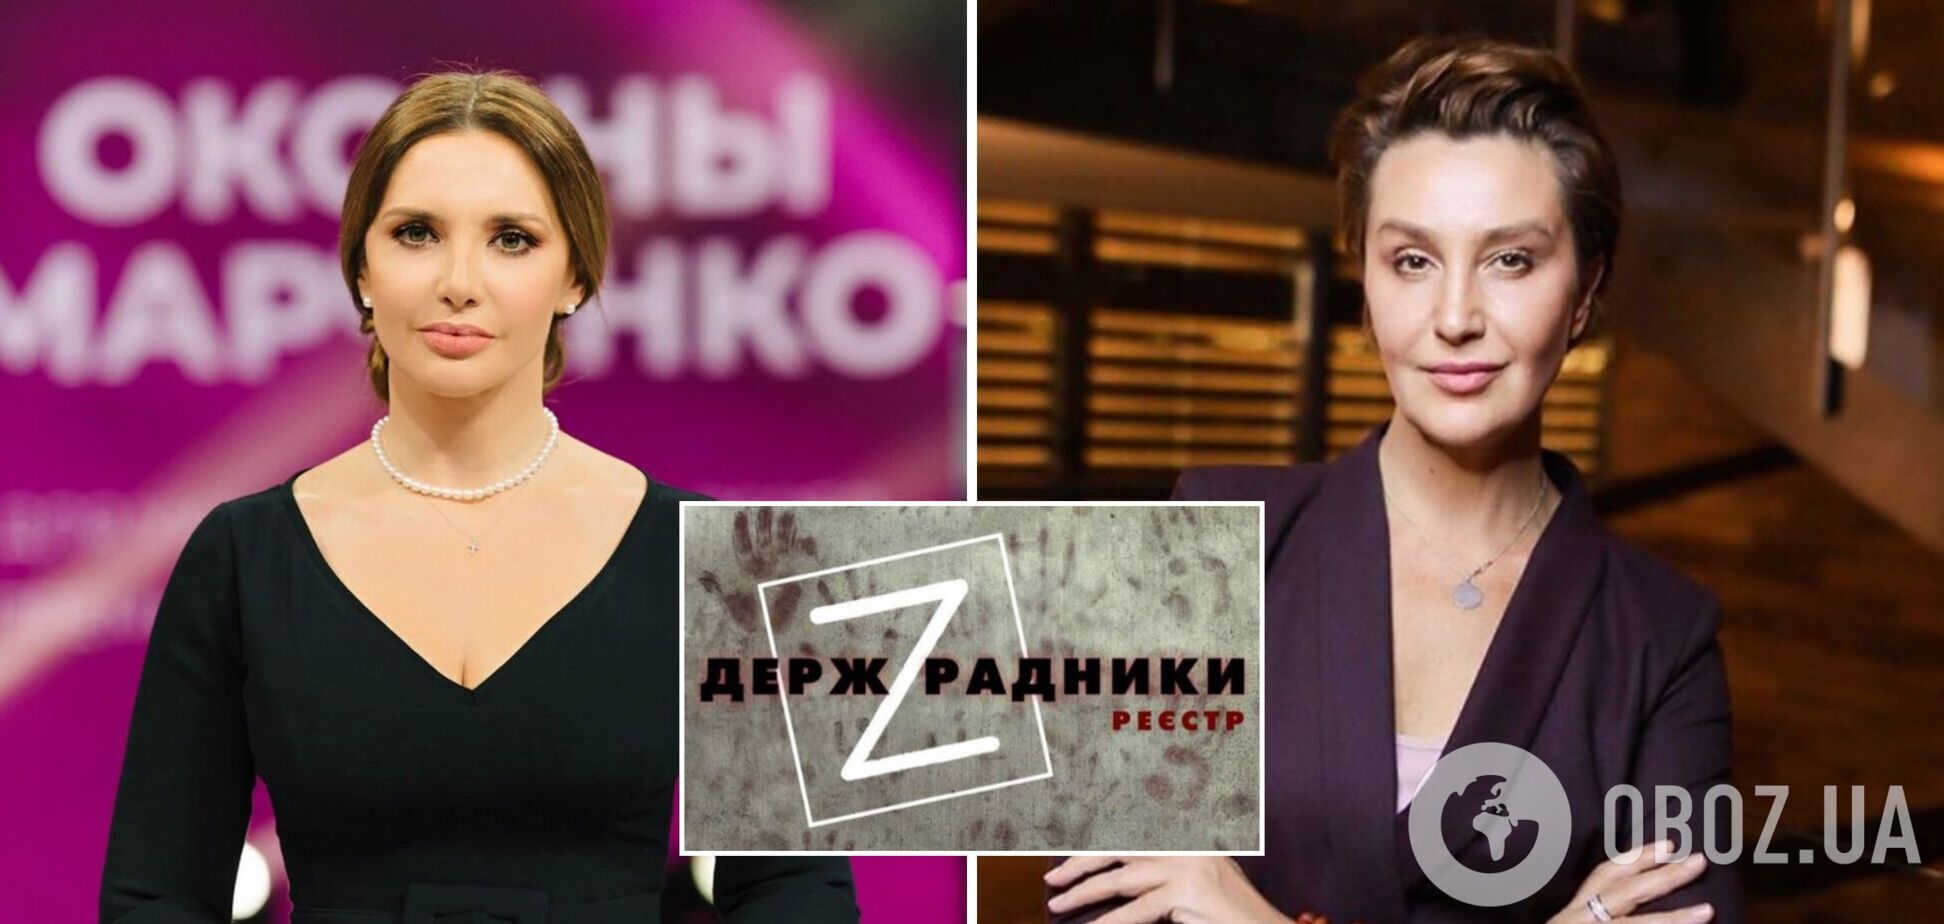 Оксана Марченко, Снежана Егорова и другие: Нацсовет внес в реестр госпредателей 13 медийщиков